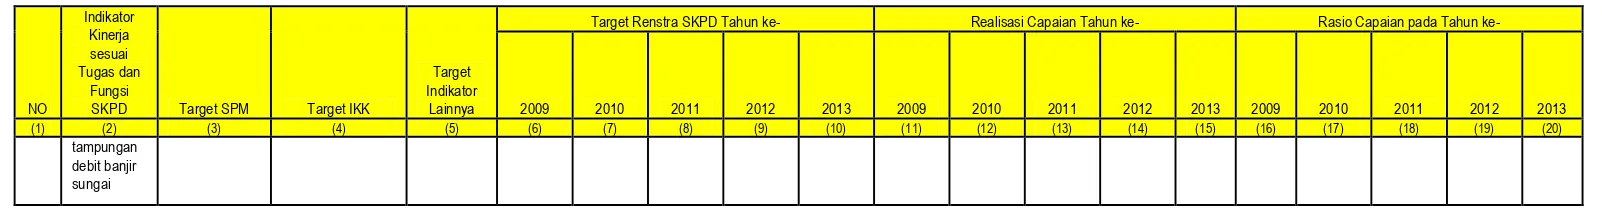 Tabel diatas menunjukkan tentang Pencapaian Kinerja Pelayanan Dinas PU. Pengairan Kabupaten Sampang rata – rata sudah mencapai target